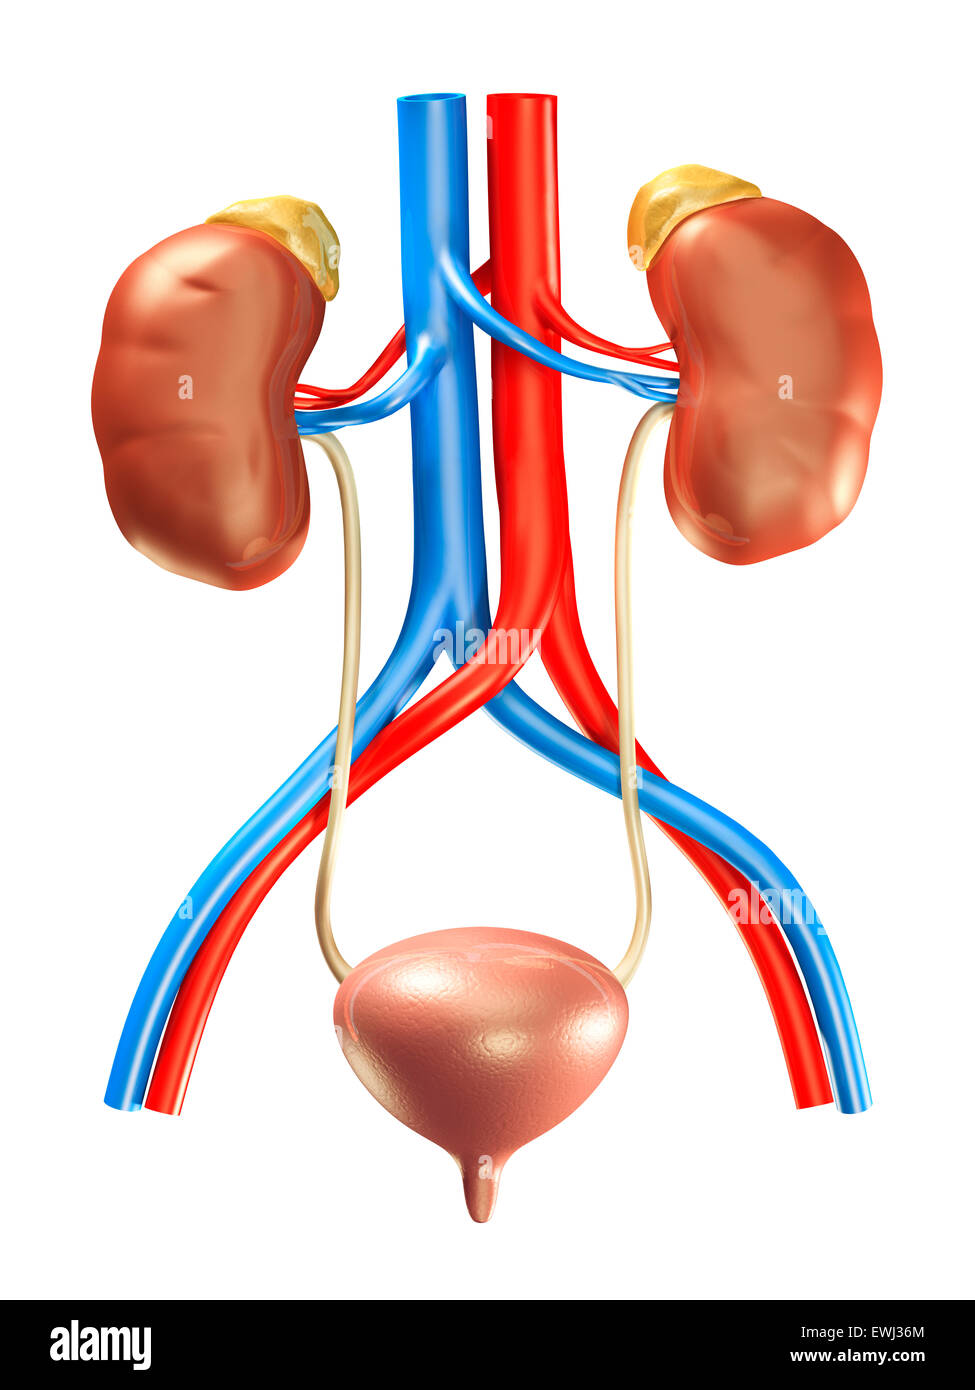 Reni umani, ghiandole surrenali, una vescica e arterie, medico 3D illustrazione isolati su sfondo bianco Foto Stock